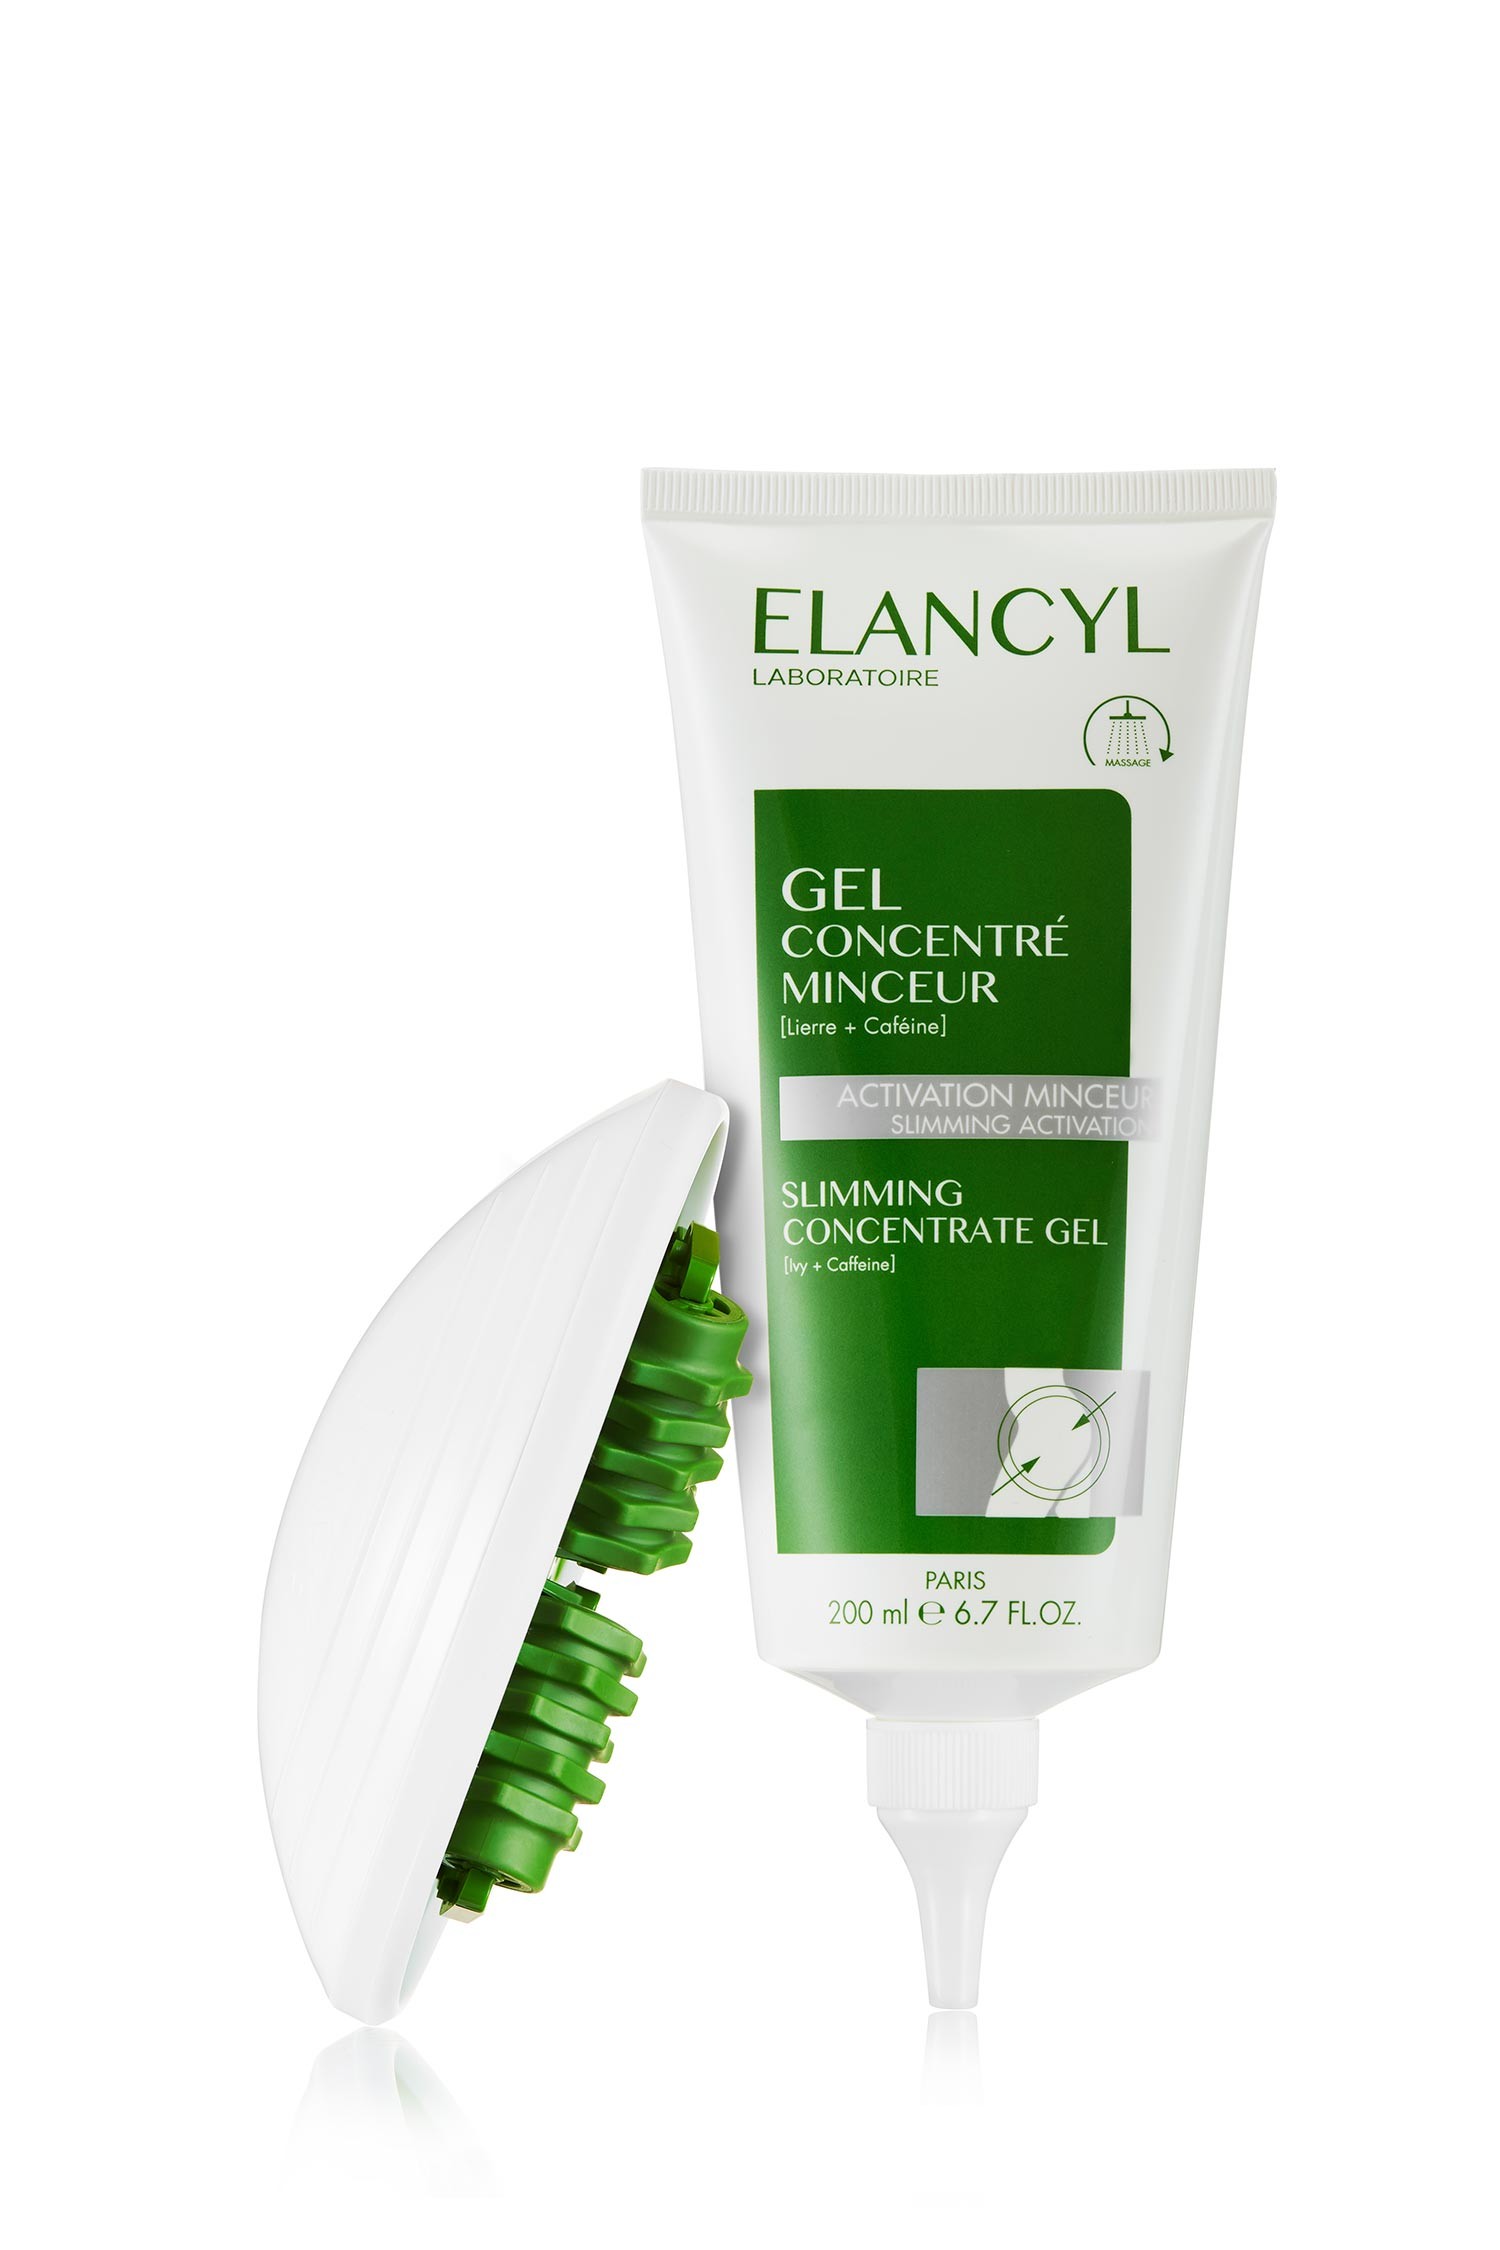 Massagem Elancyl Slim + gel concentrado anti-celulite, 1 unidade + 200 ml